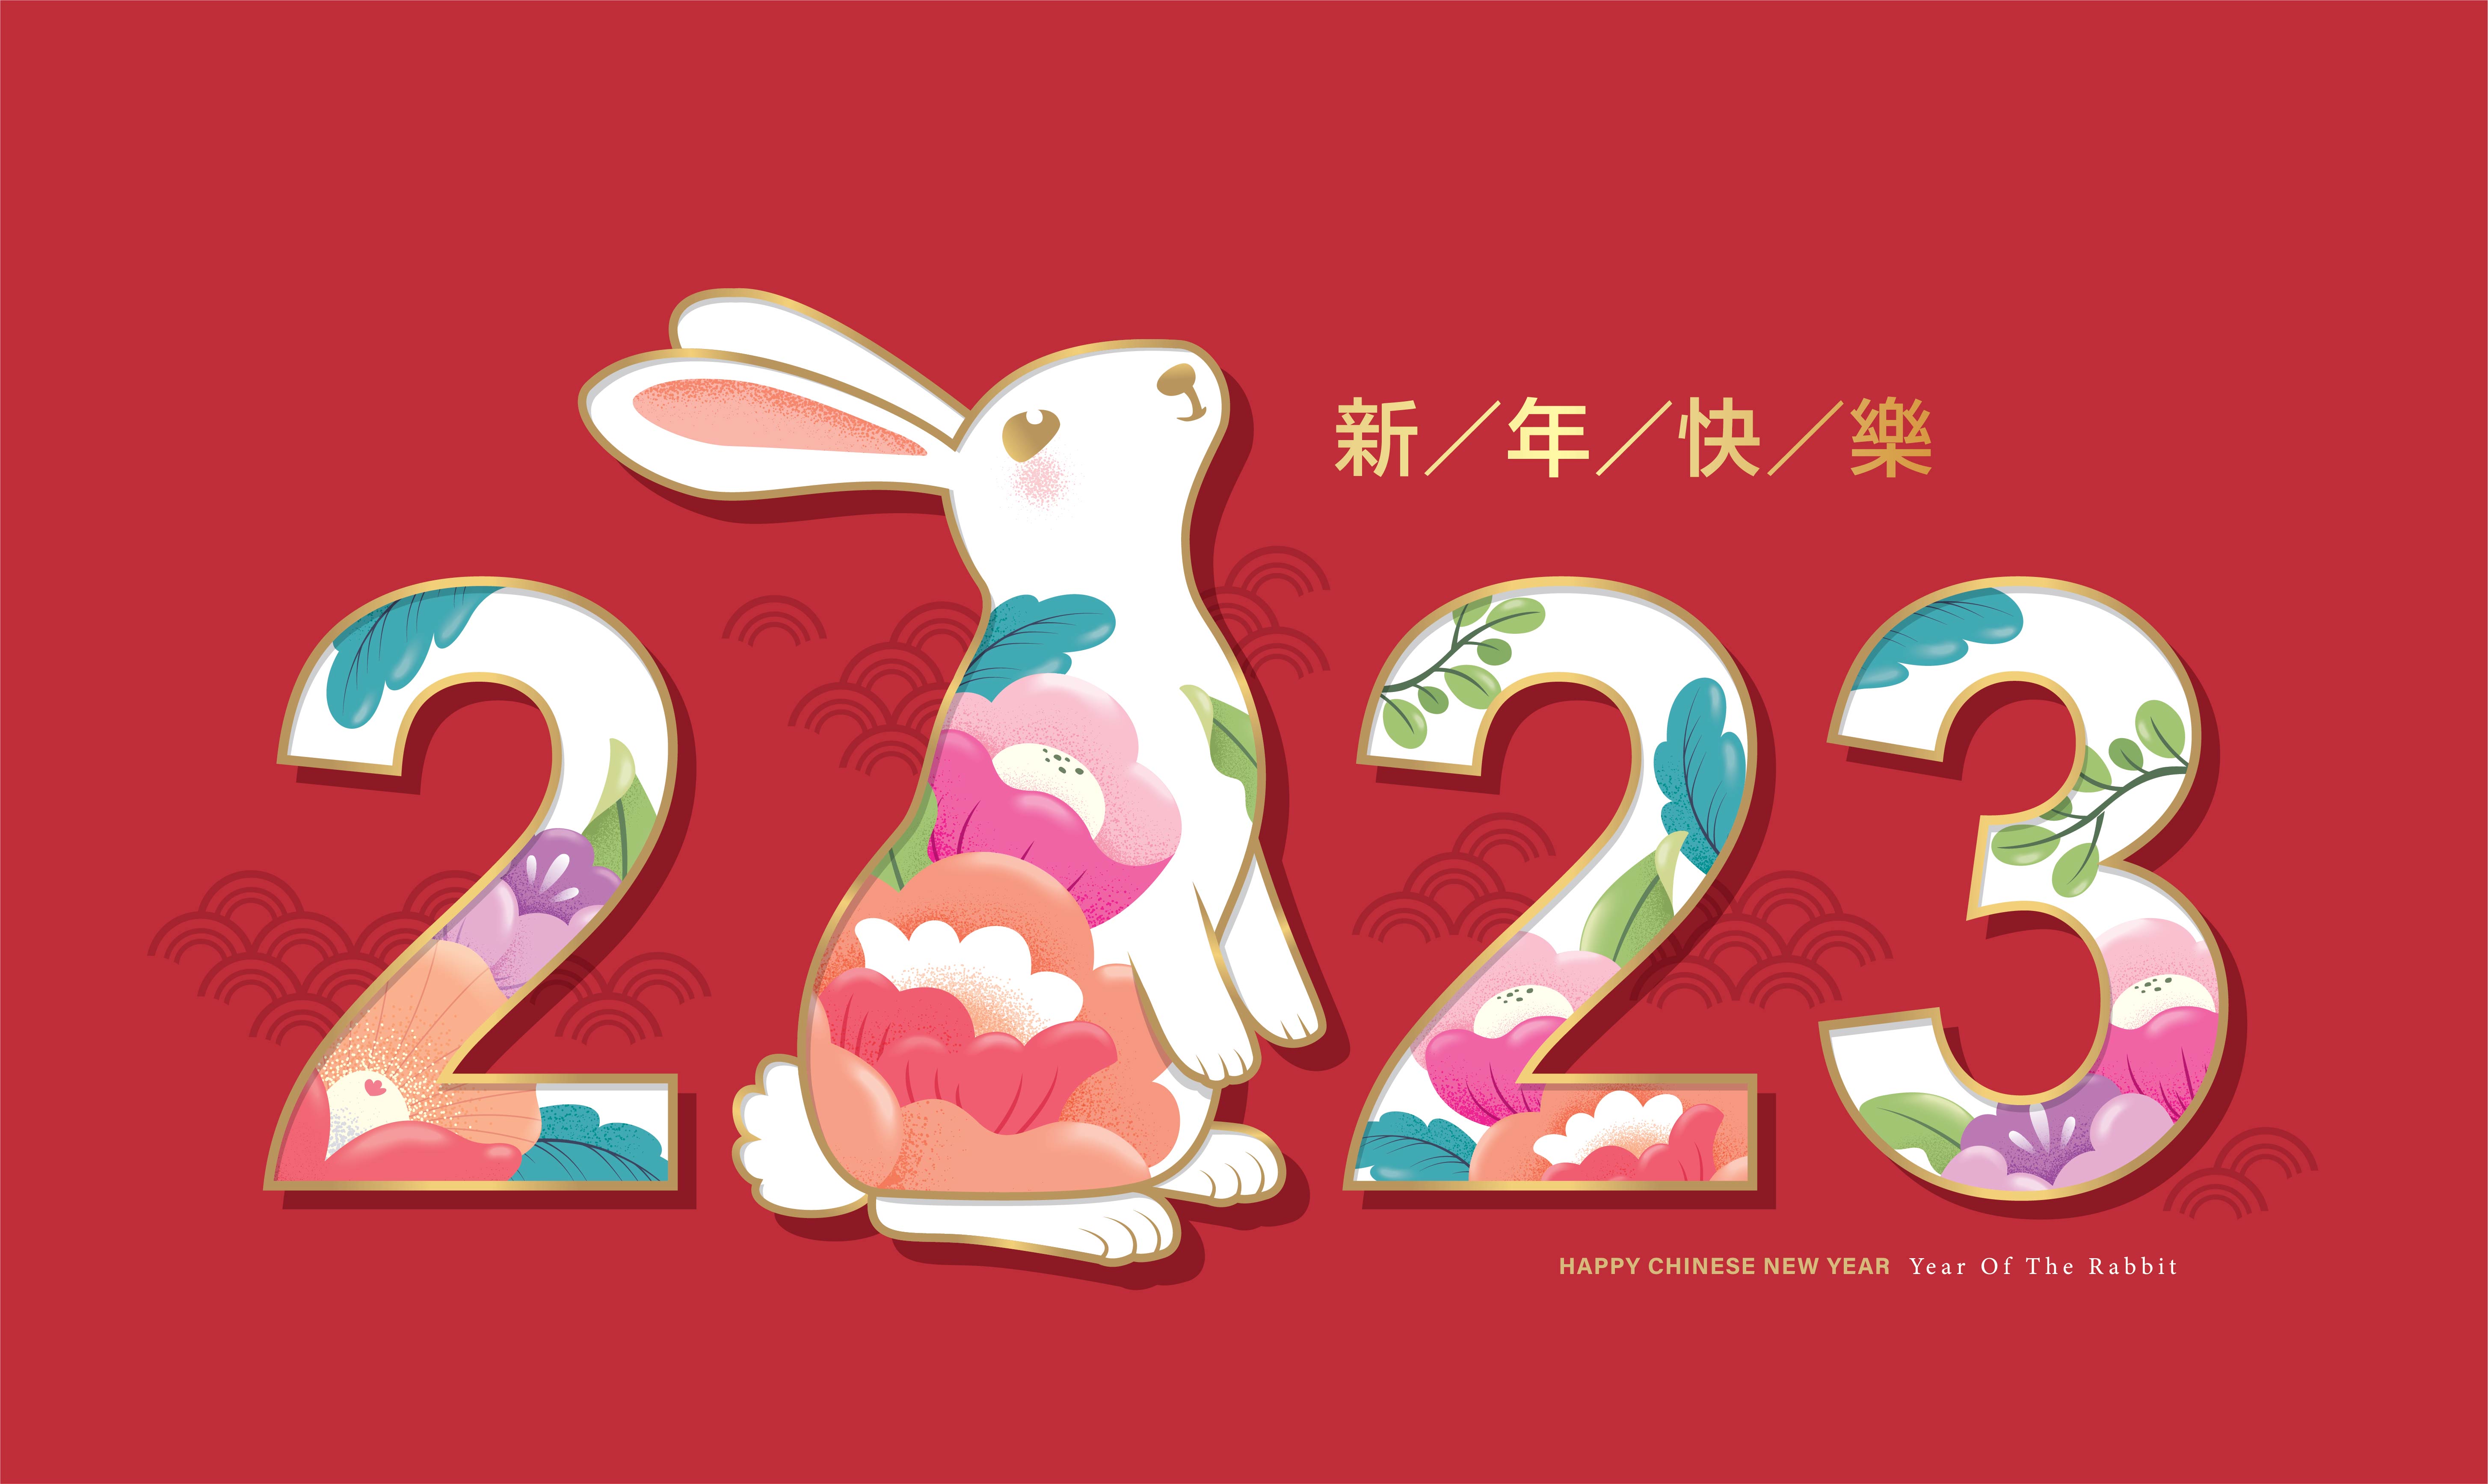 Horóscopo chino 2023: ¿cuál es mi animal según mi fecha de nacimiento?